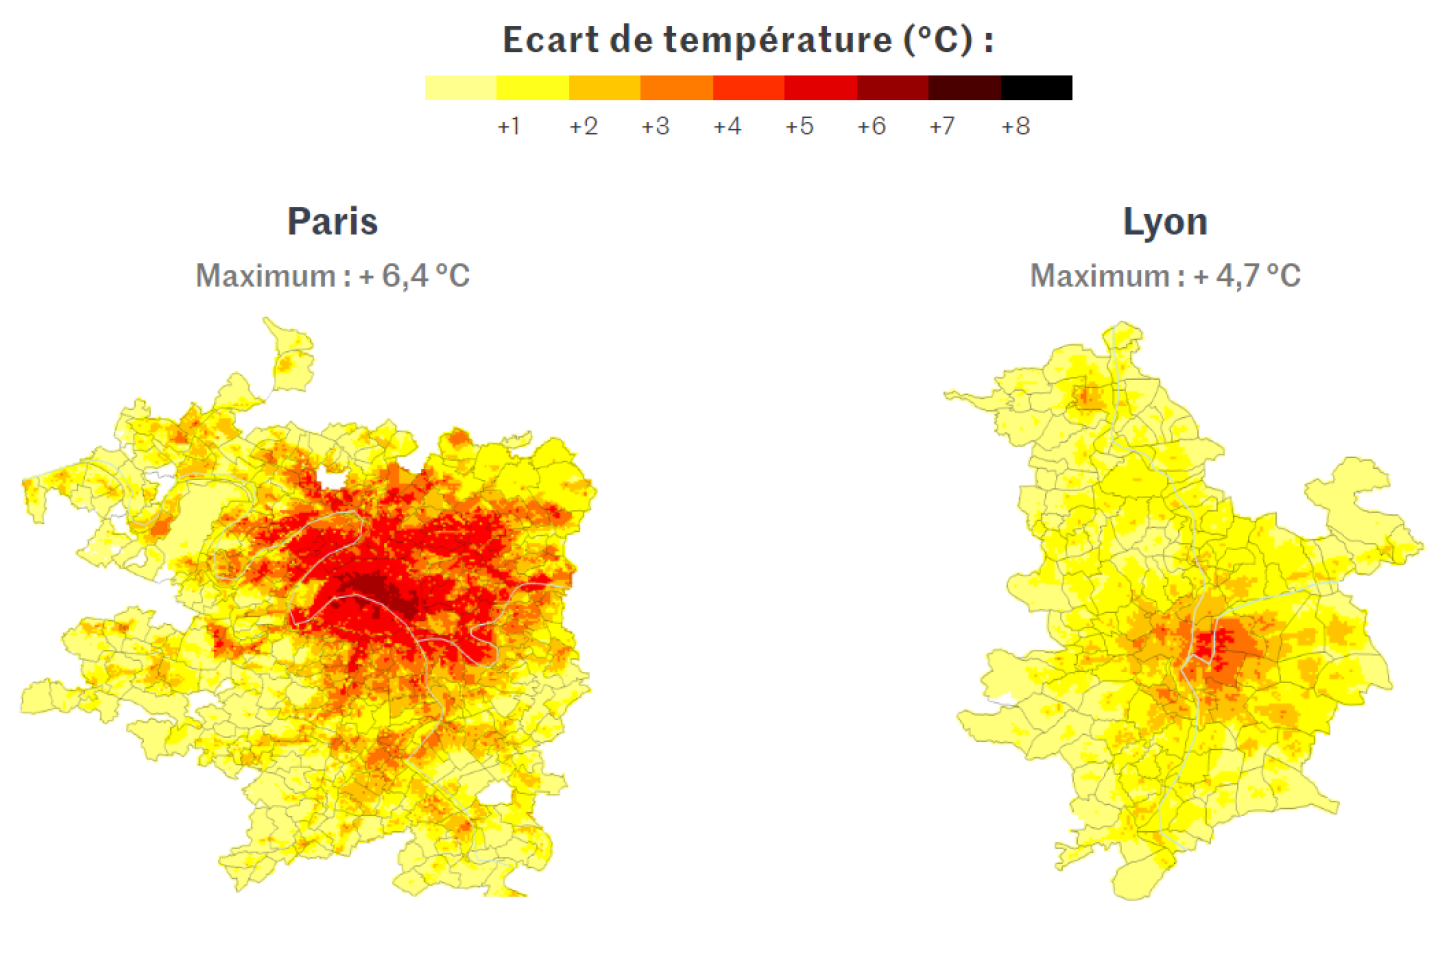 Ilots de chaleur urbains : à quoi ce phénomène est-il dû ? Quelles villes sont les plus touchées ?